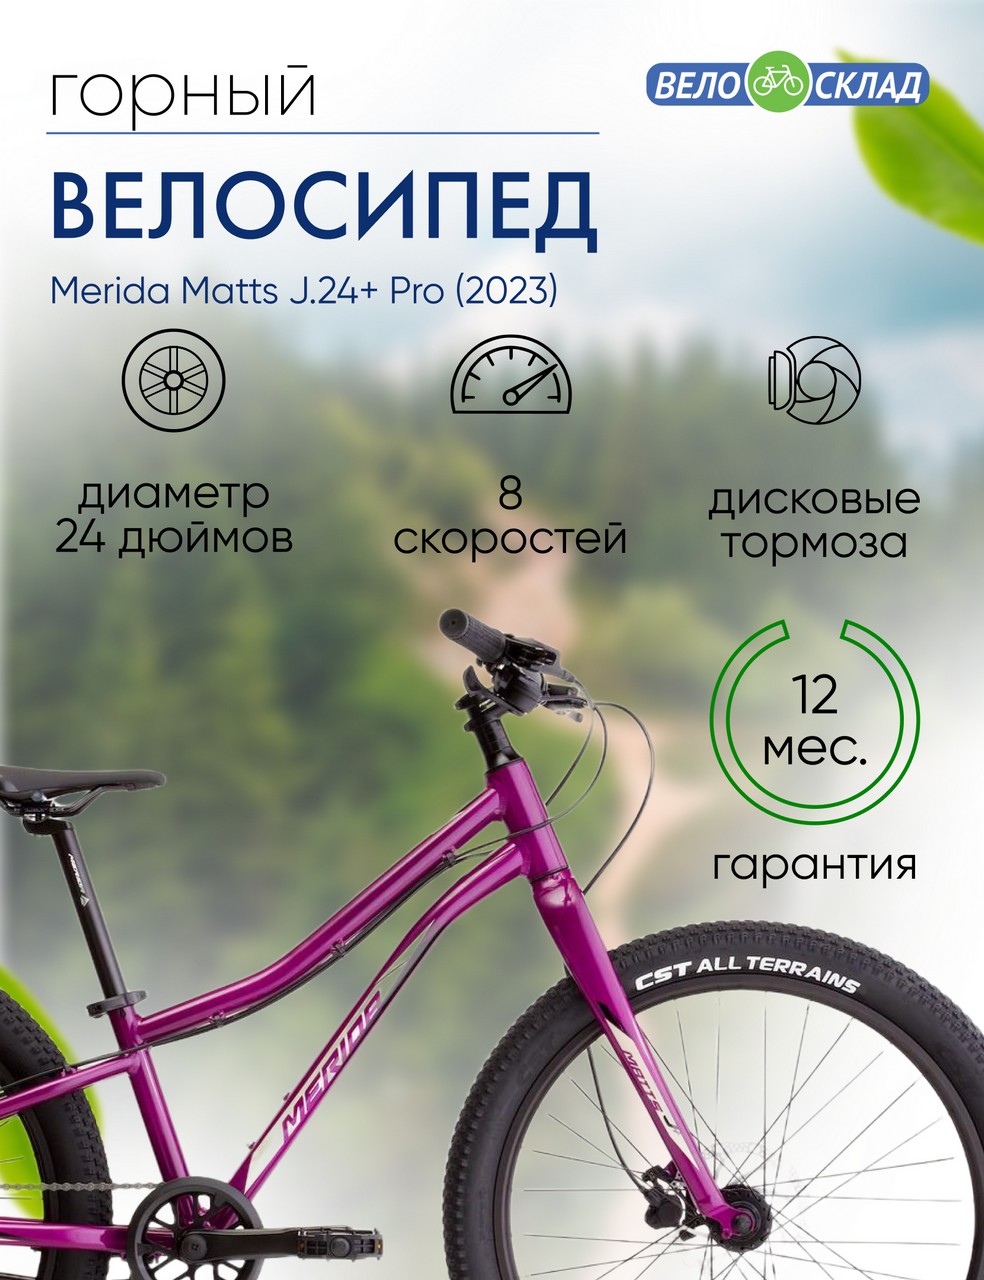 Подростковый велосипед Merida Matts J.24+ Pro, год 2023, цвет Фиолетовый-Черный